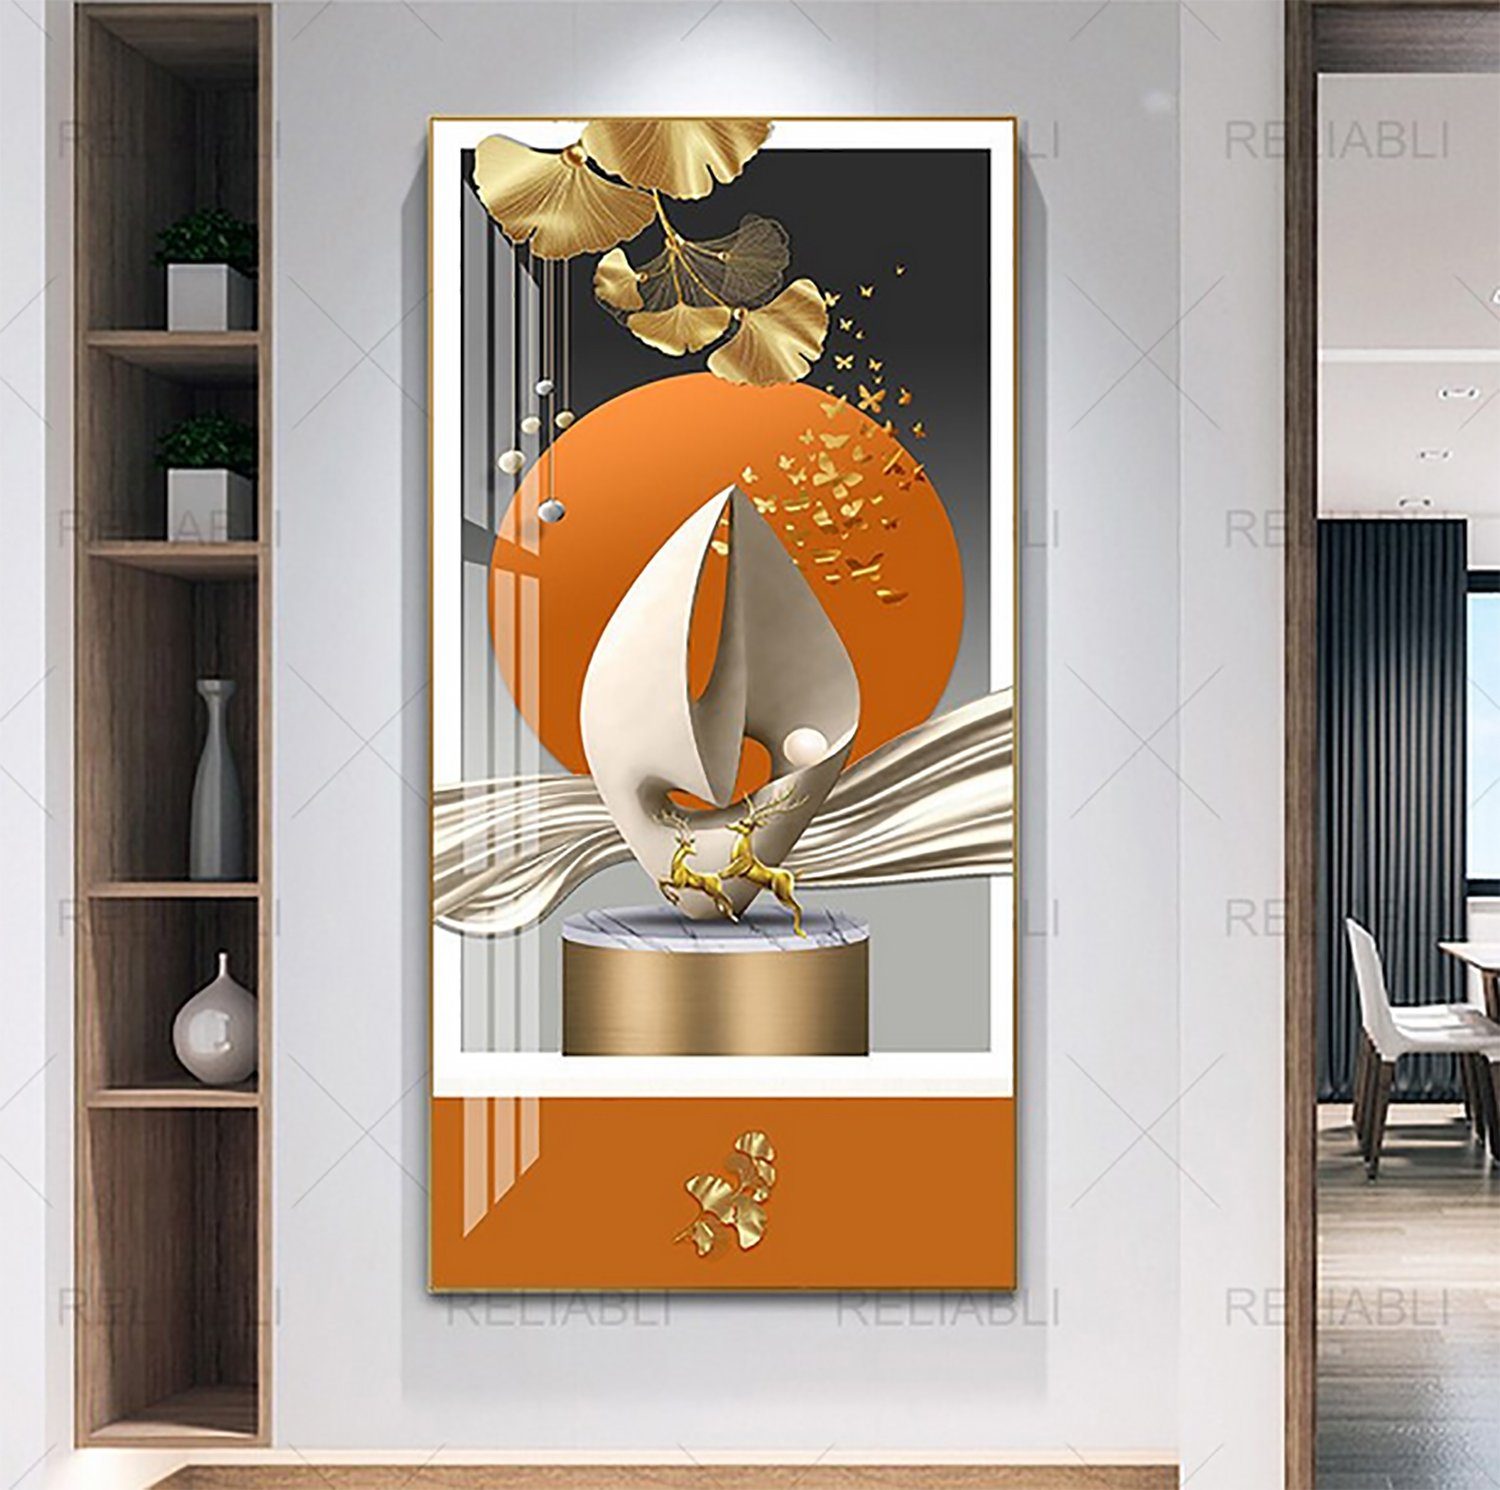 TPFLiving Kunstdruck (OHNE RAHMEN) Poster - Leinwand - Wandbild, Abstrakte geometrische Formen - (Leinwand Wohnzimmer, Leinwand Bilder, Kunstdruck), Farben: Gold, blau, weiß, türkis und grau - Größe 20x30cm